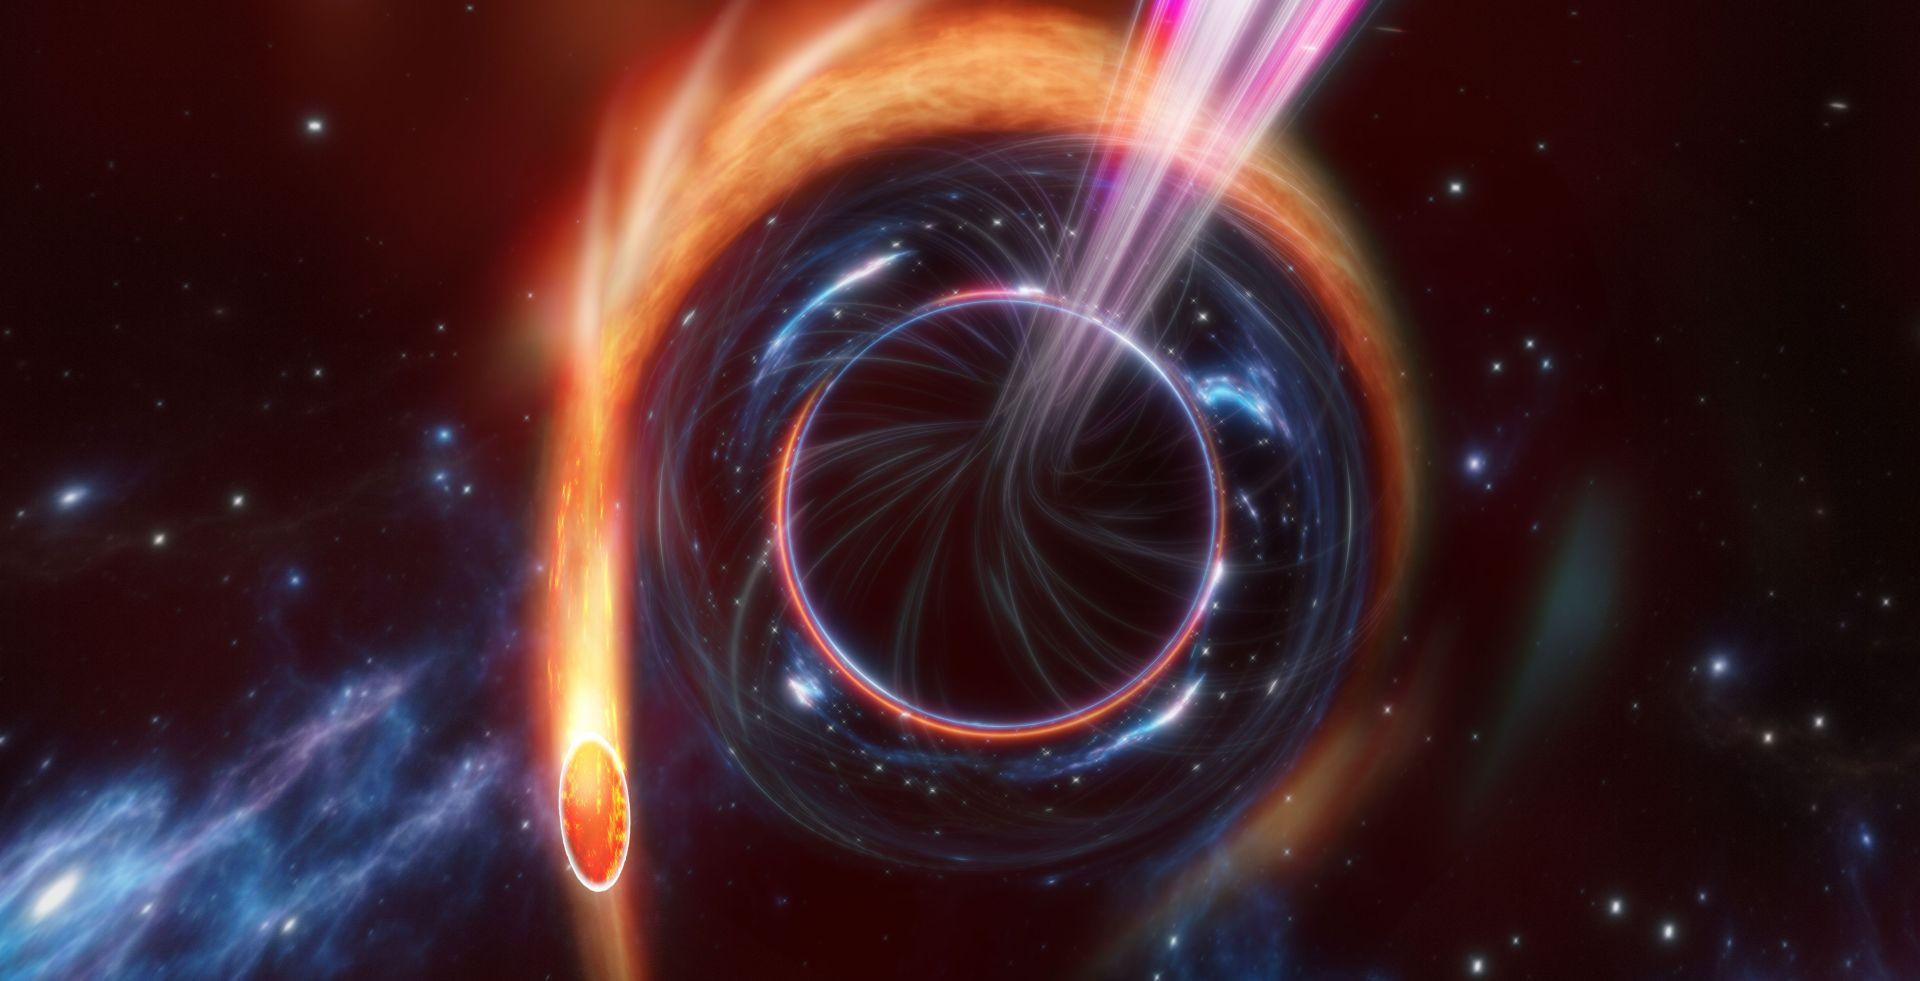 Une étoile dévorée par un trou noir supermassif, nommé un événement de rupture par effet de marée (TDE, Tidal Disruption Event). Ce qui fait de ce TDE un TDE très rare, c'est que lorsque le trou noir déchire l'étoile, deux jets de matière se déplaçant presque à la vitesse de la lumière sont lancés dans des directions opposées, produisant de la lumière dans toutes les longueurs d'onde. Les TDE à jets sont extrêmement rares et AT2022cmc, représenté ici, est le premier découvert avec un télescope optique. [Swinburne University of Technology - Carl Knox/OzGrav, ARC Centre of Excellence for Gravitational Wave Discovery]